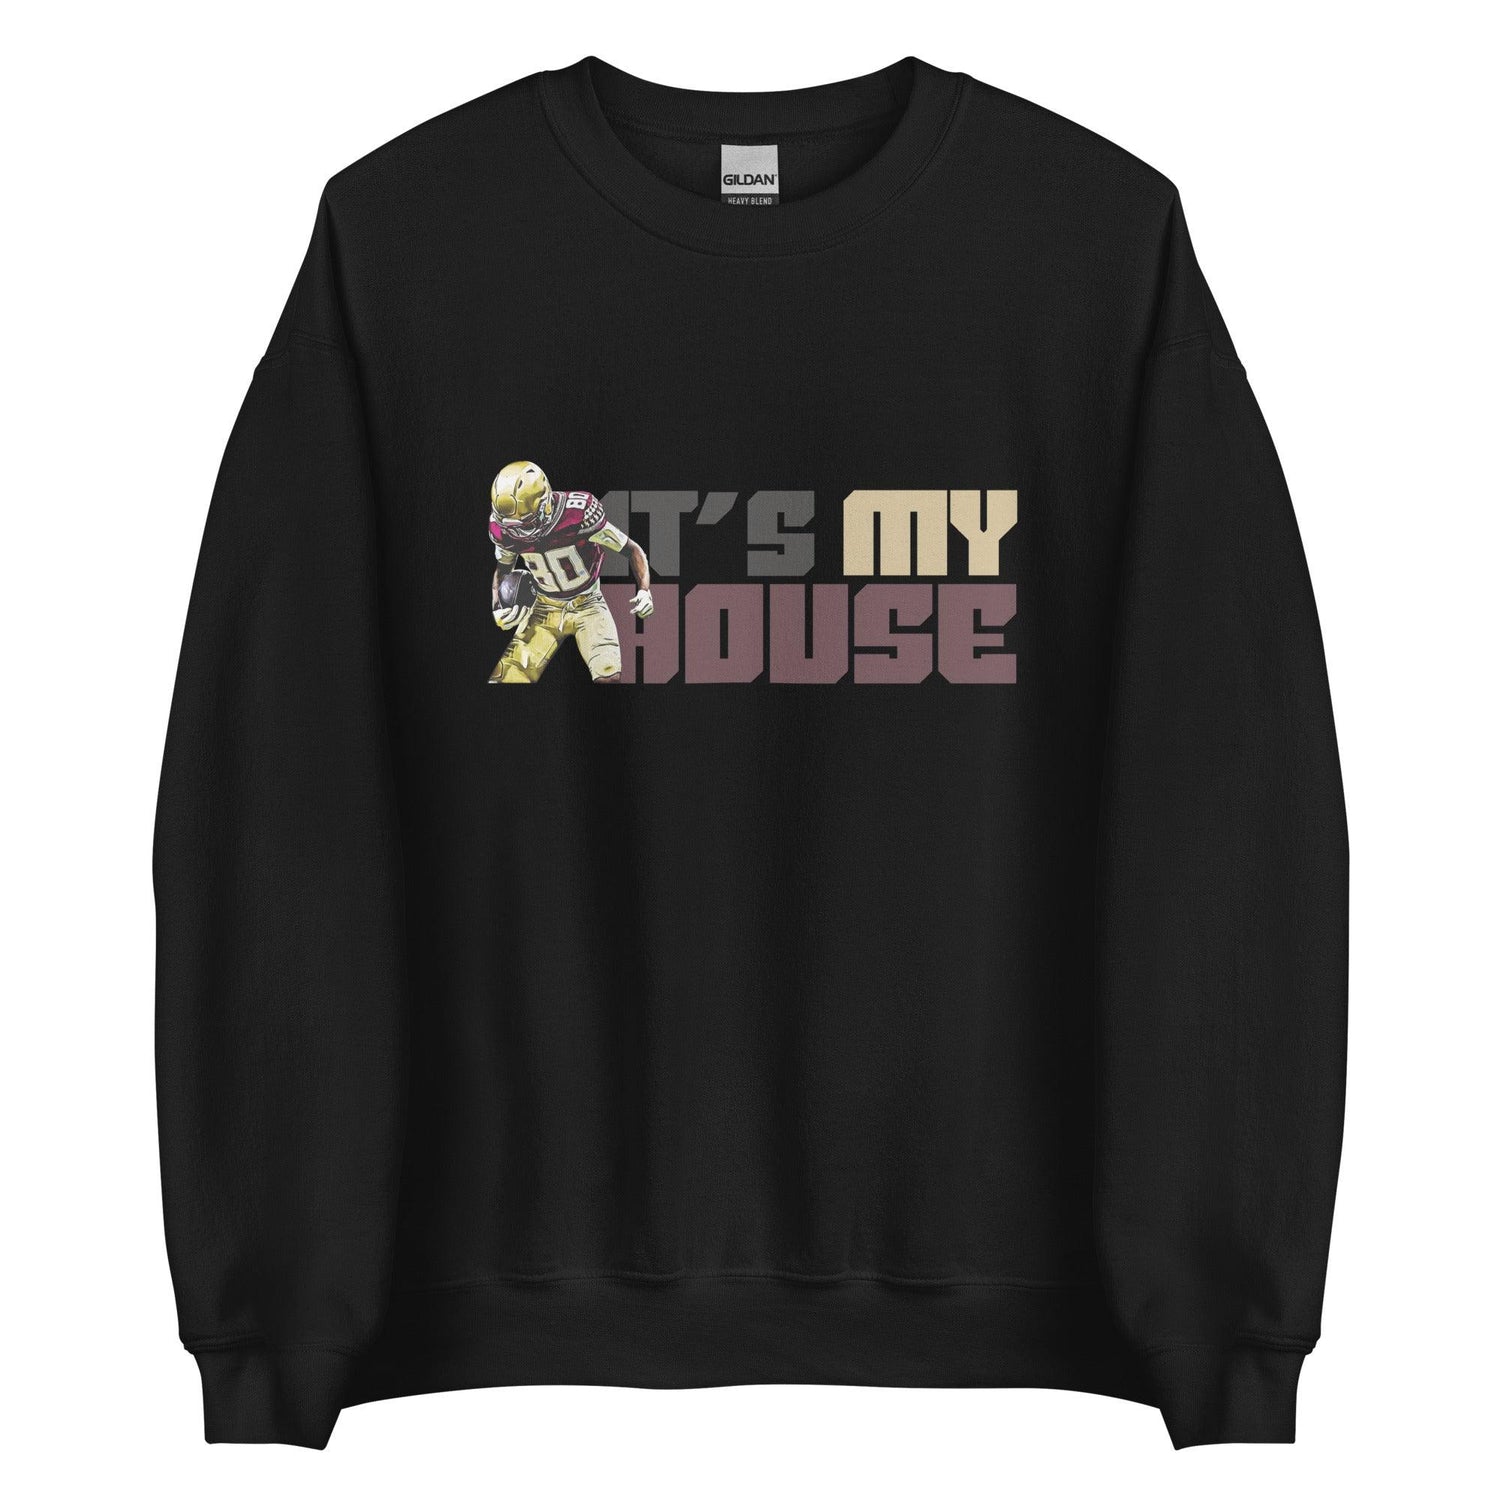 Pokey Wilson "It's My House" Sweatshirt - Fan Arch